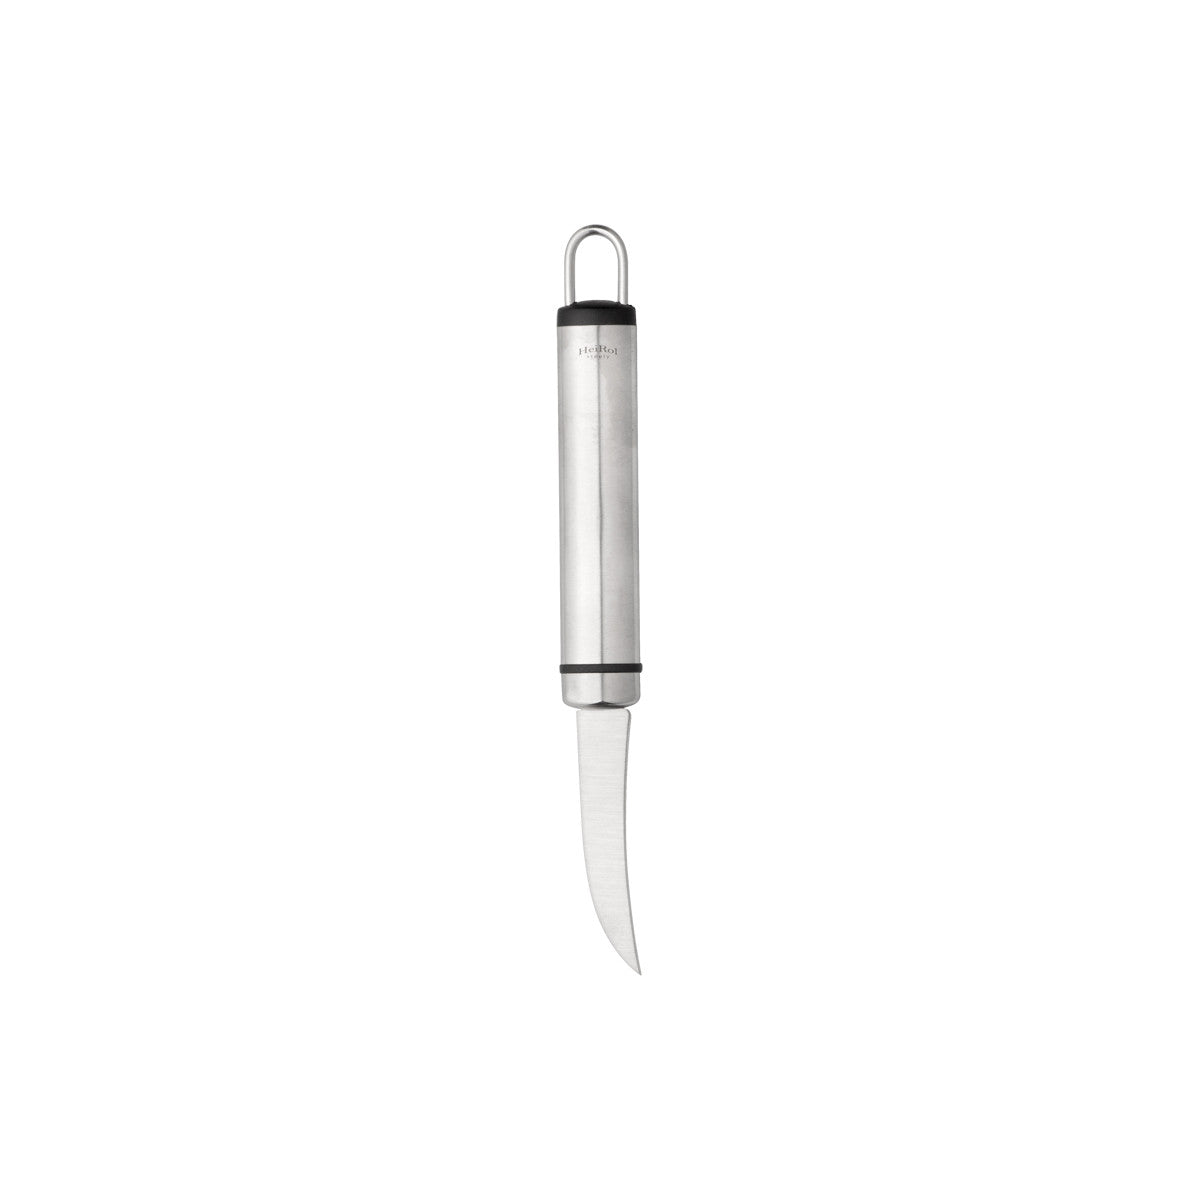 FRUIT KNIFE 18.8 CM STEELY